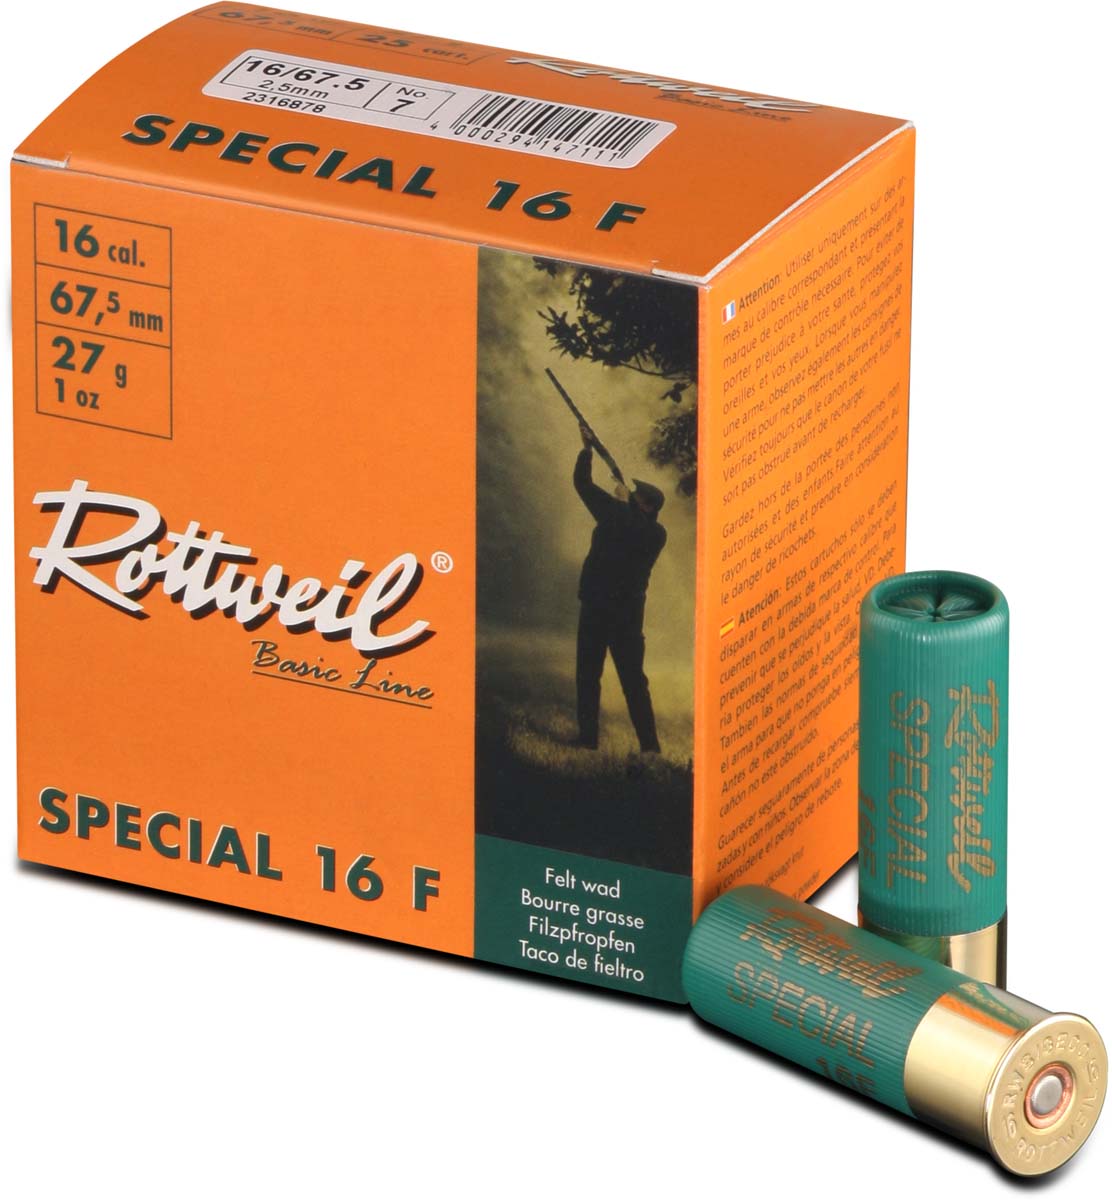 Rottweil 16/67,5 Special 16F 3,0mm - 27g - bietet eine großartige Deckung.